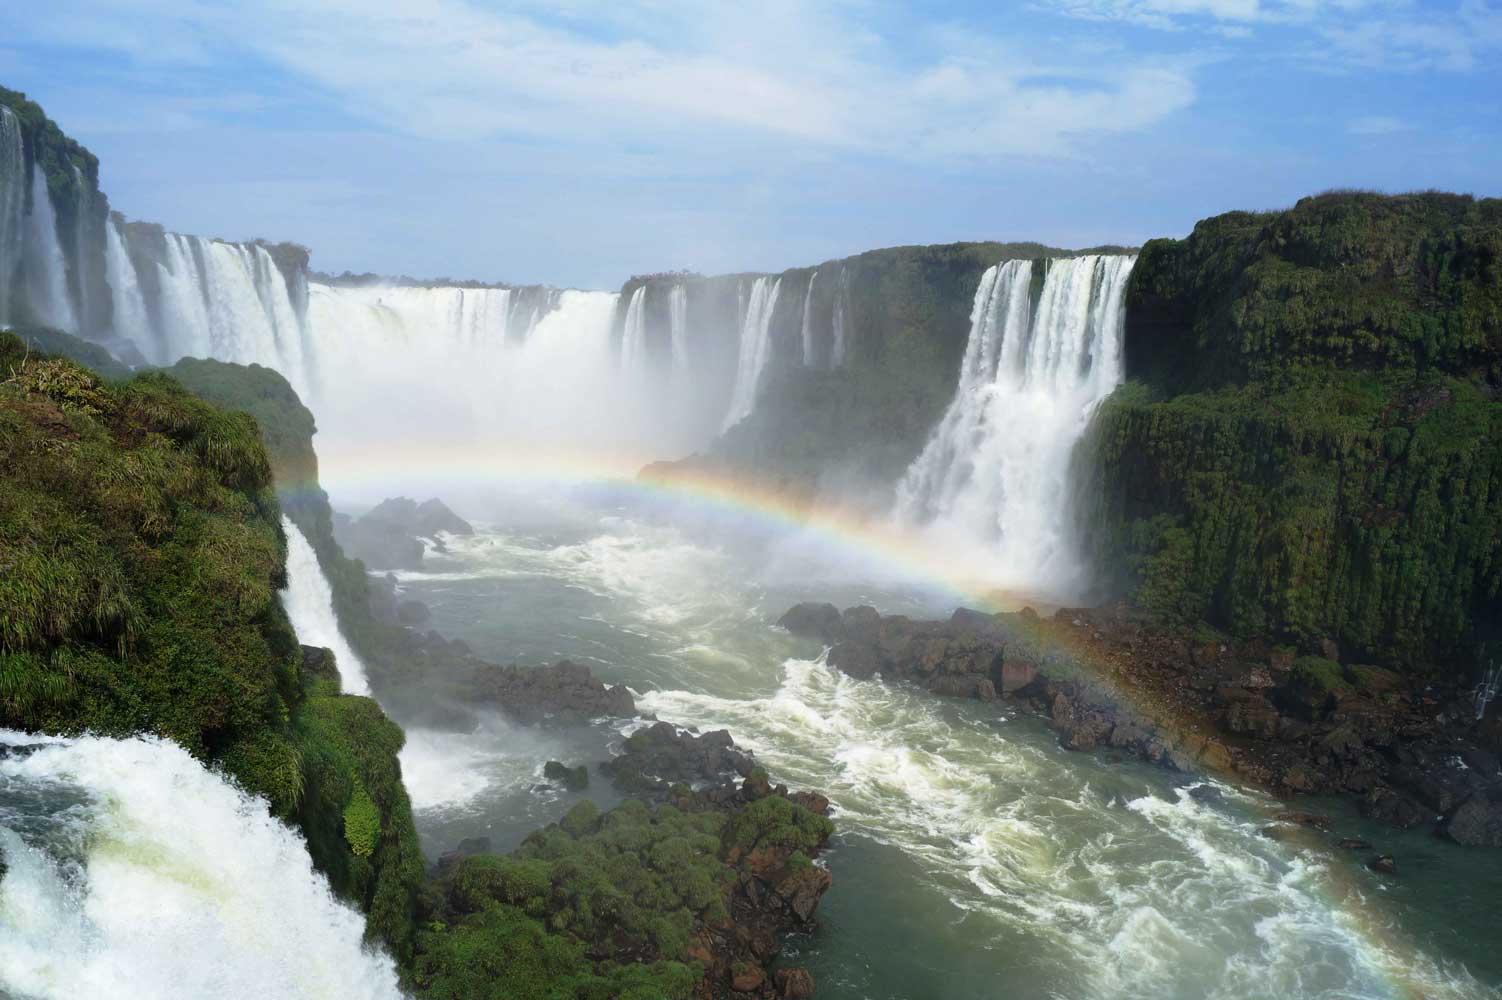 Die spektakulärsten Wasserfälle der Welt – Iguazu in Brasilien und Argentinien